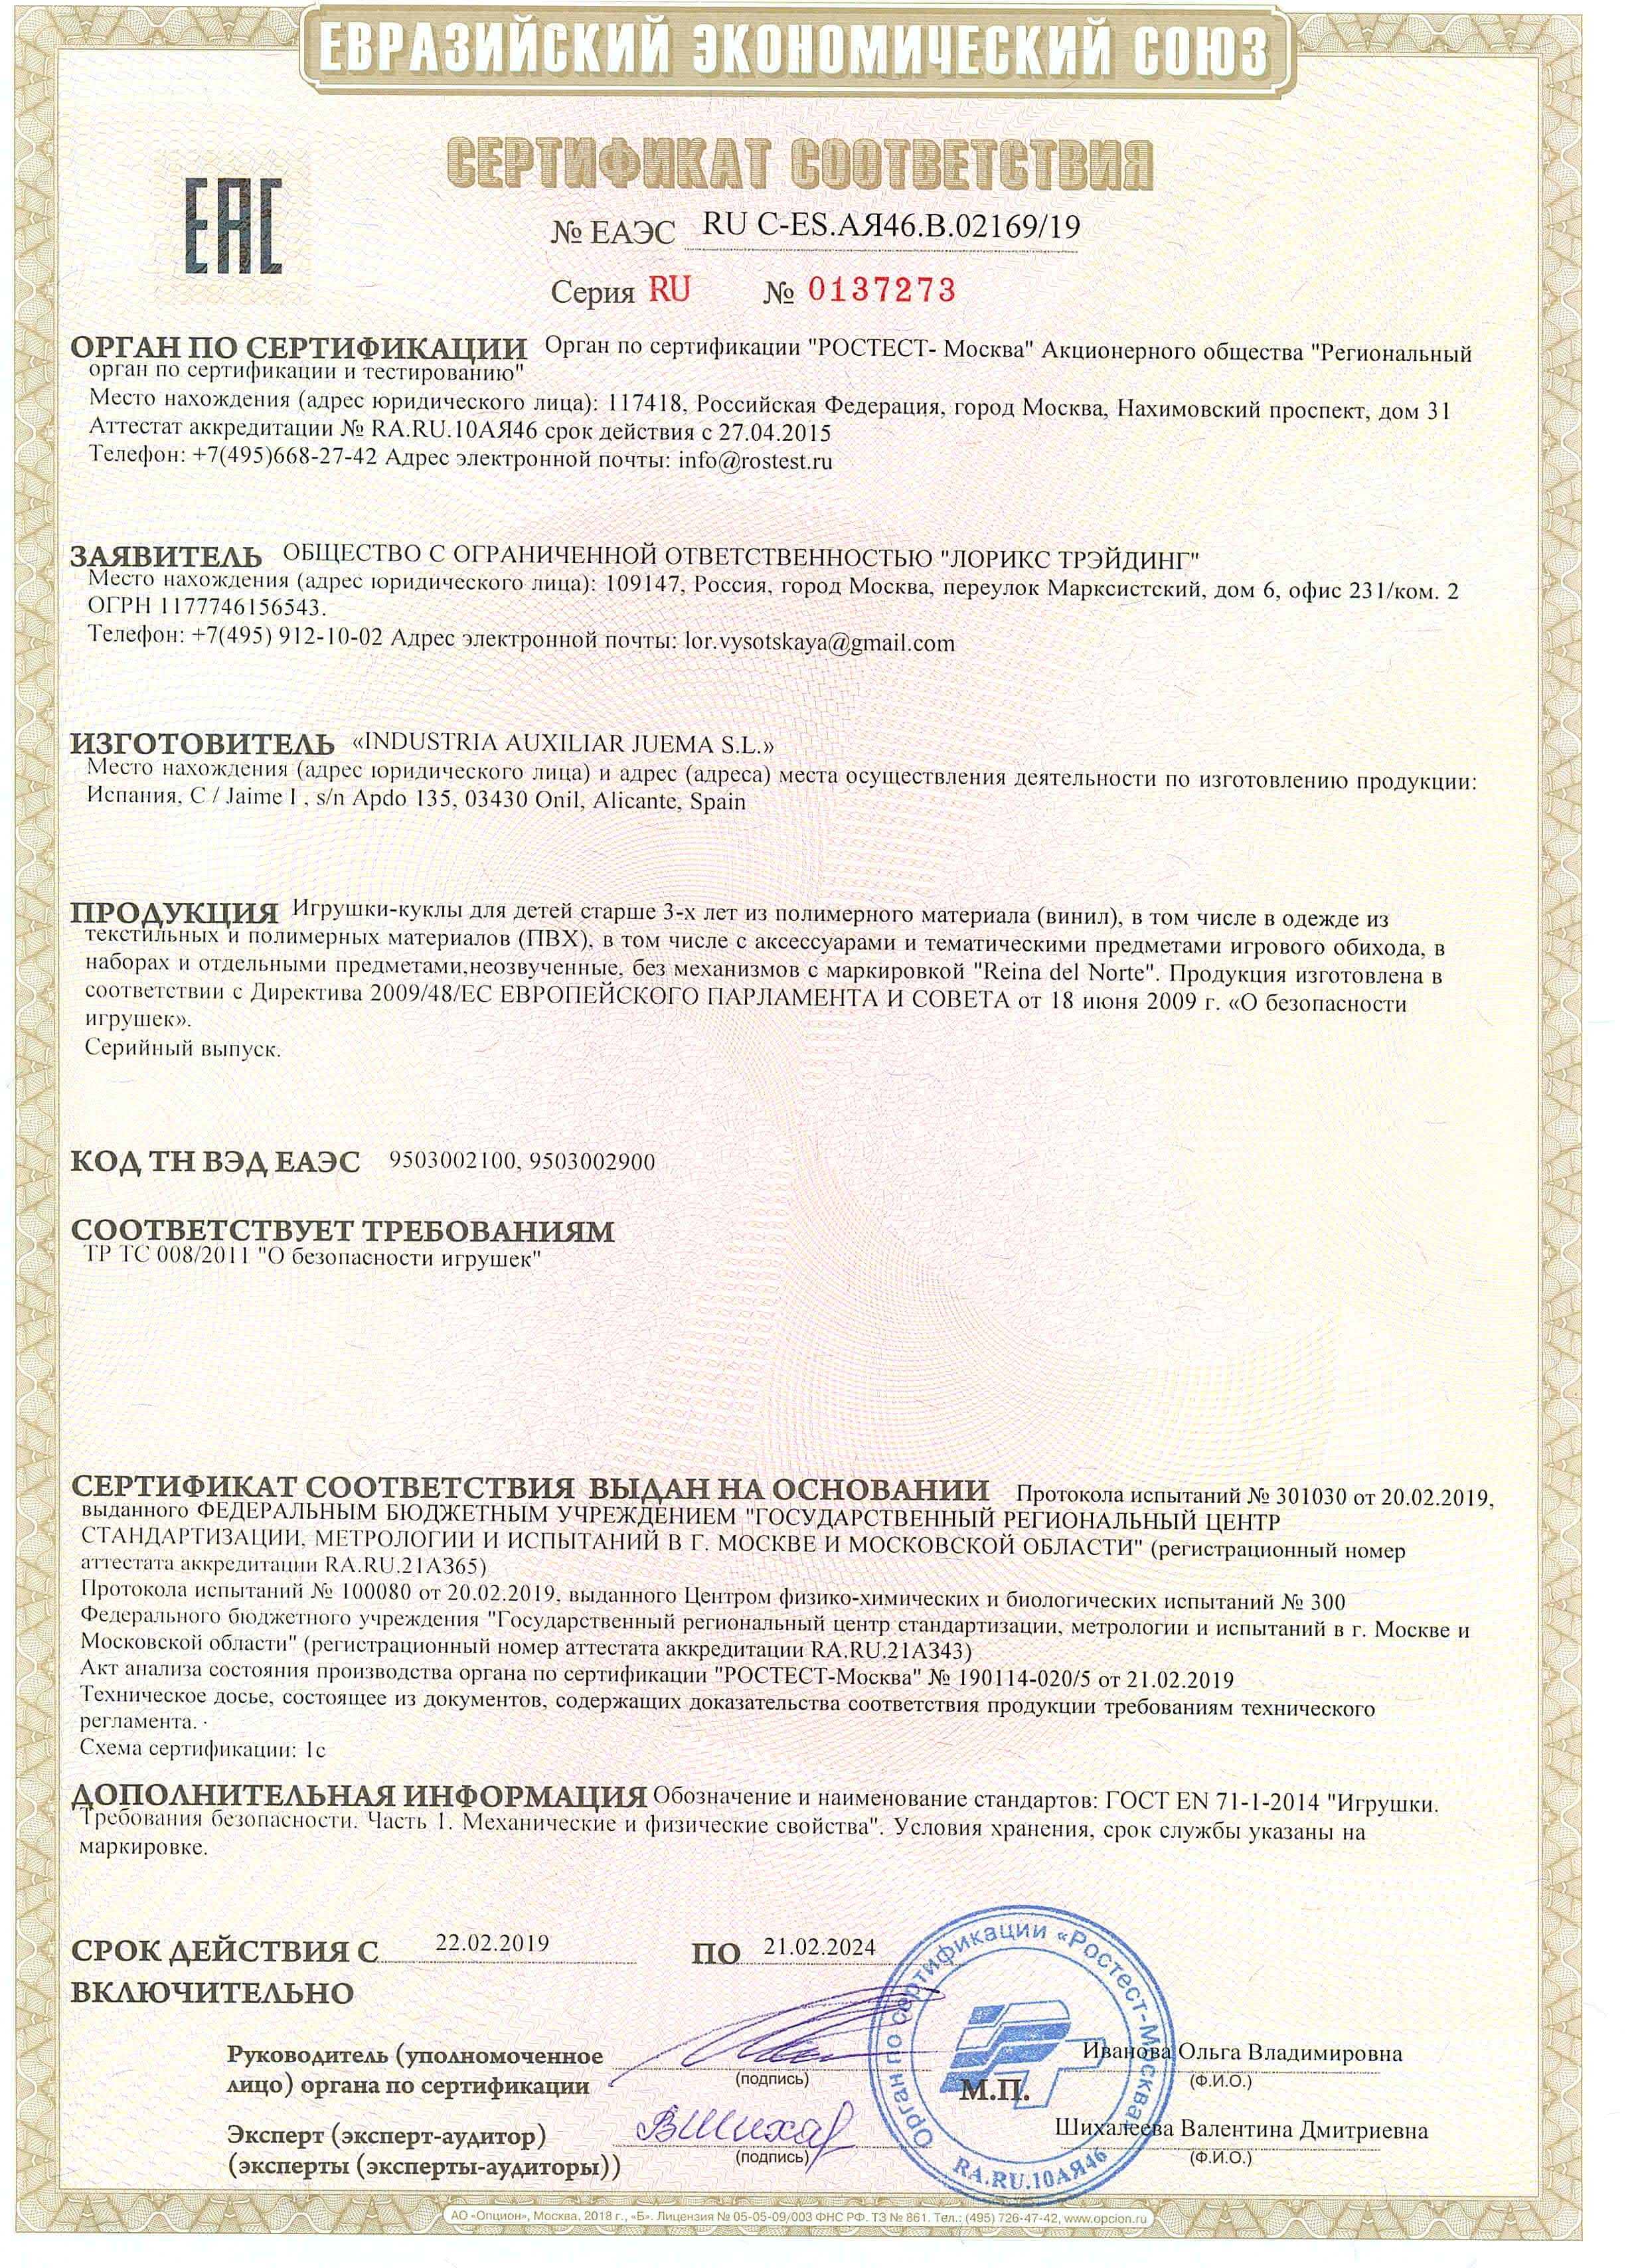 Сертификат соответствия кукол Рейна дель Норте